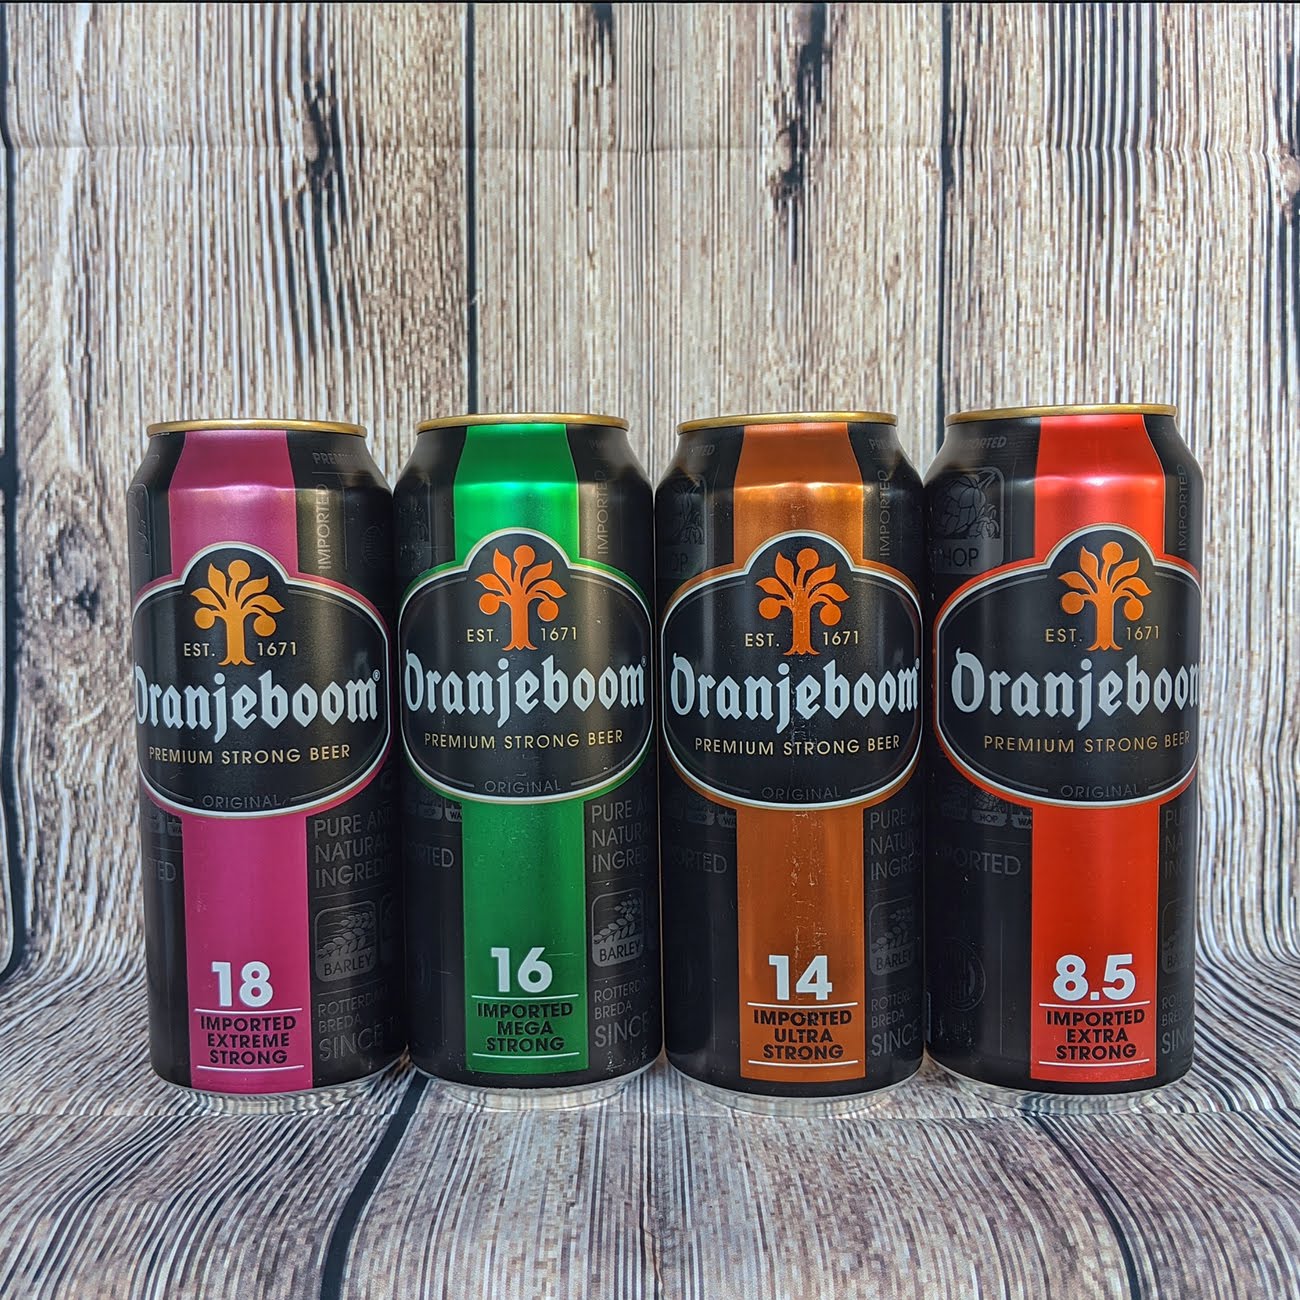 Bia Hà Lan Oranjeboom Premium Strong 14%